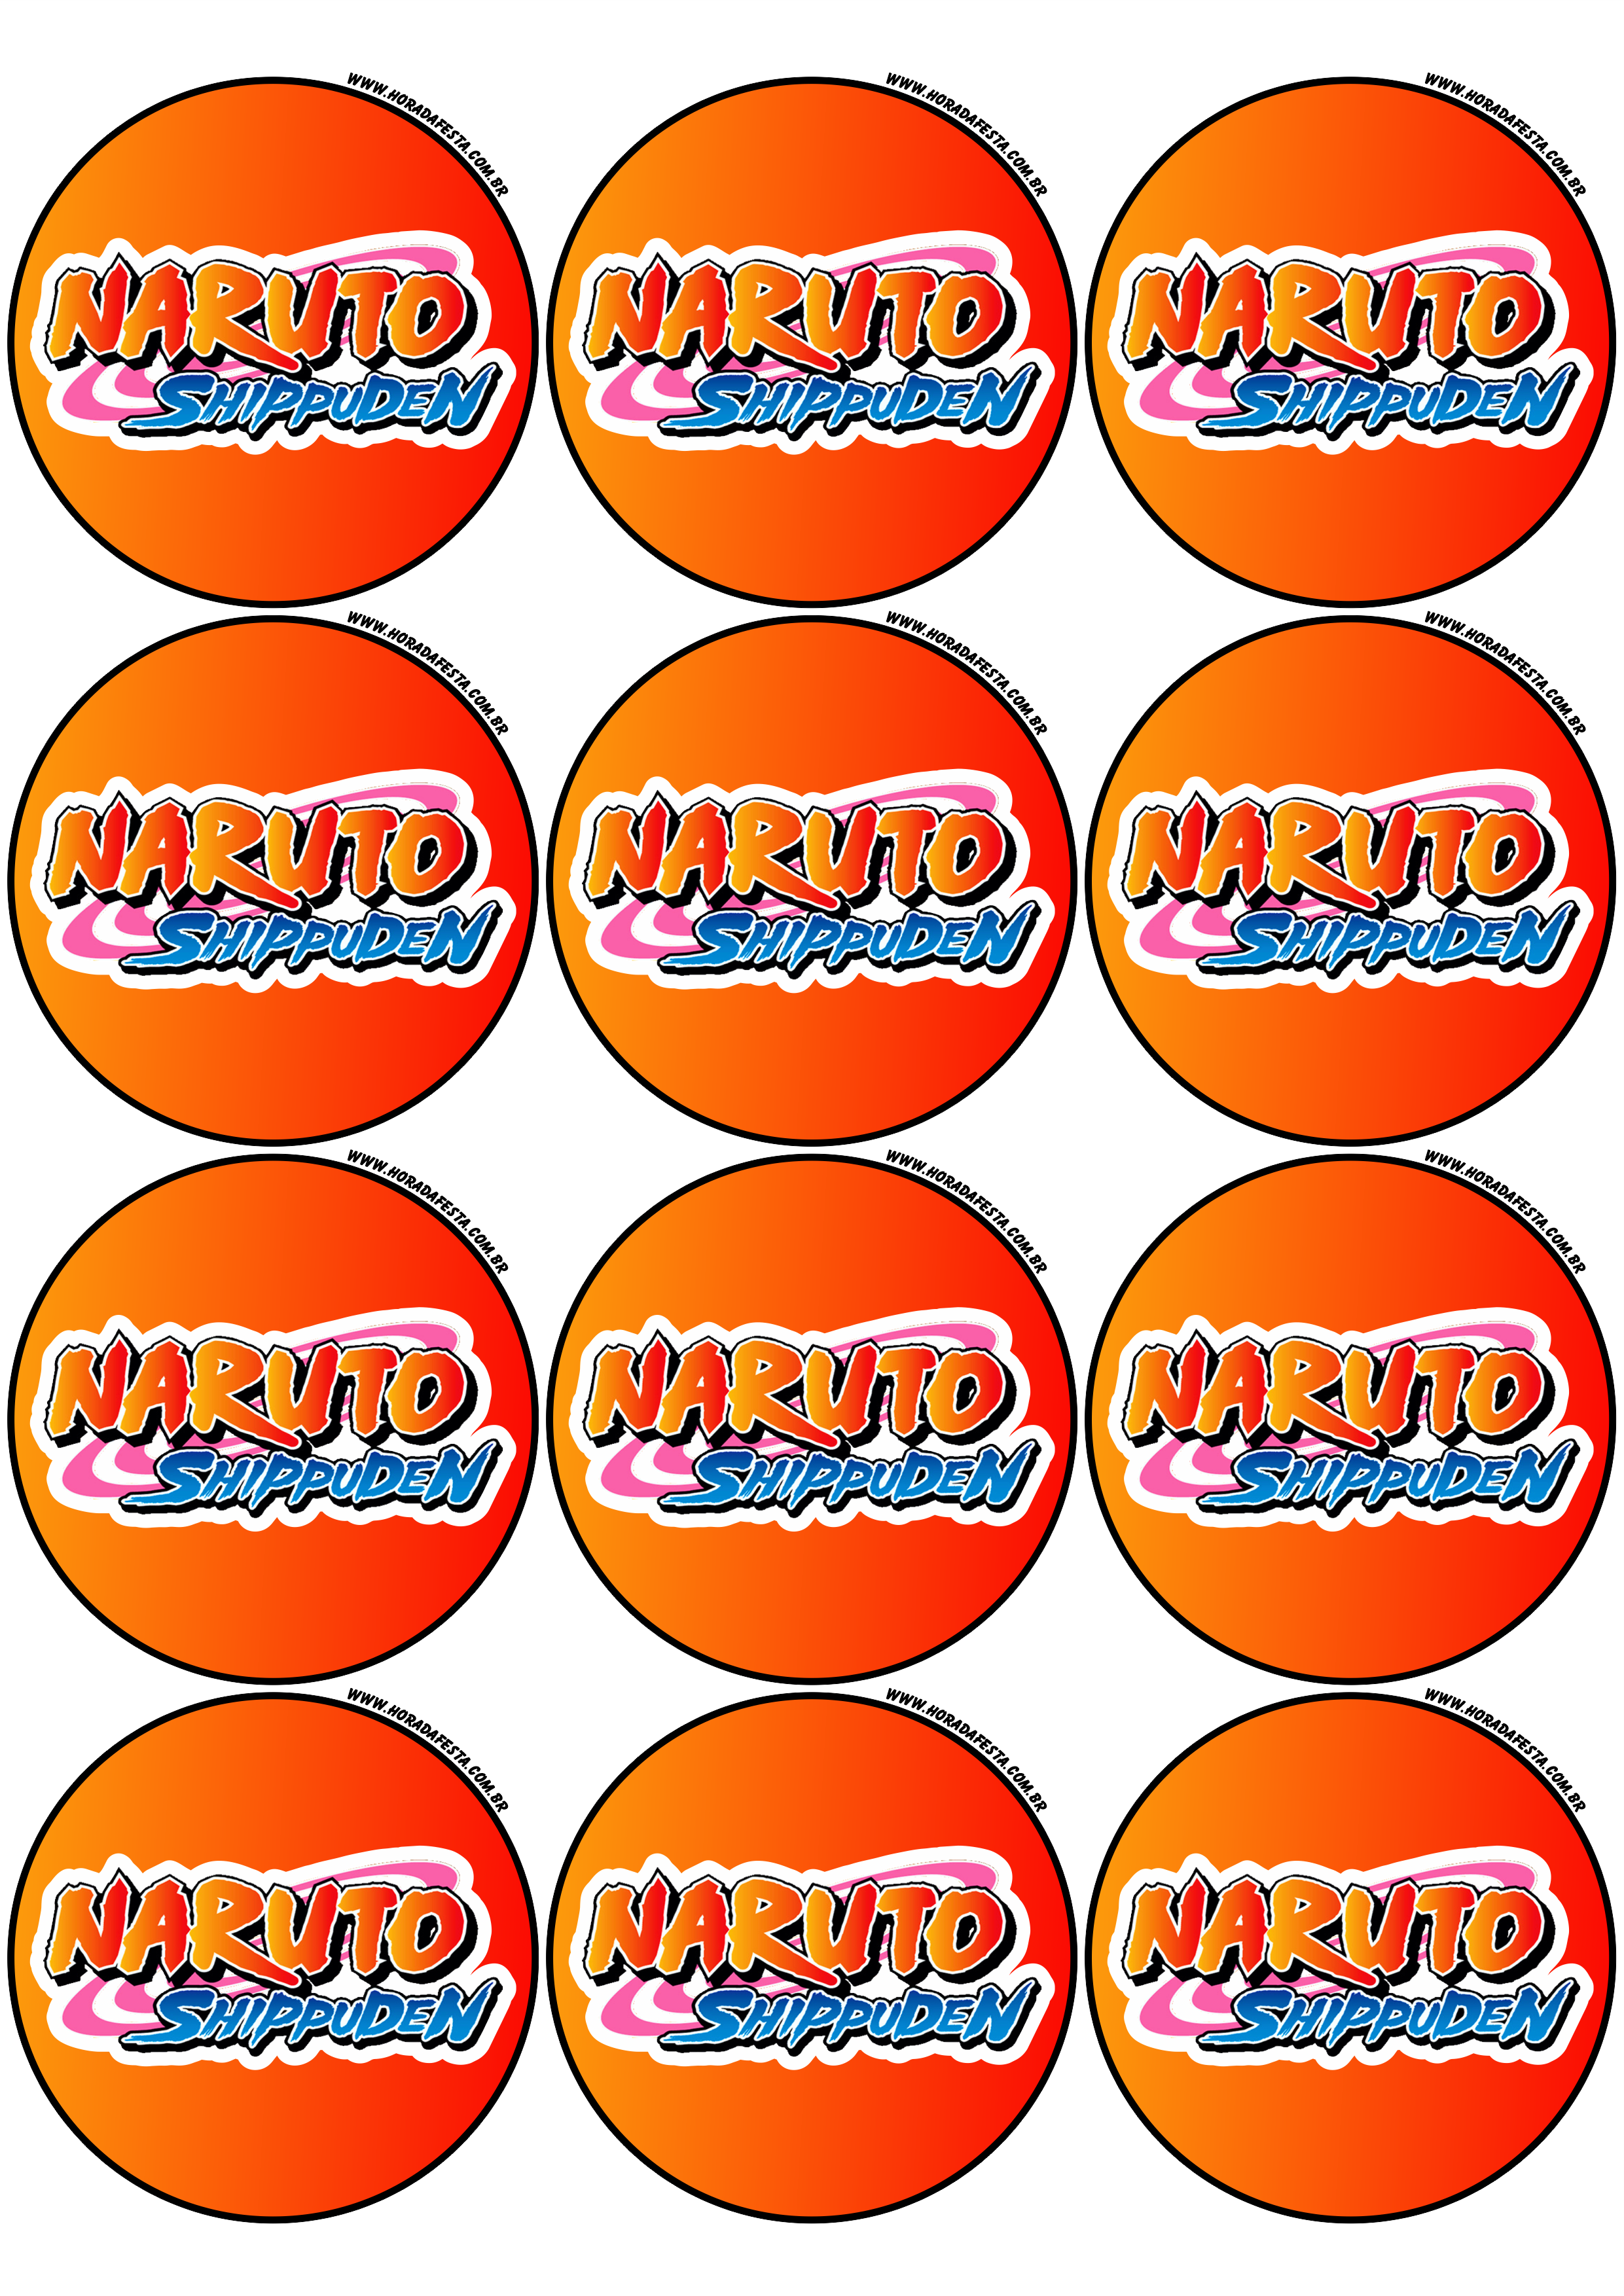 Naruto Shippuden adesivo redondo decoração de festas artigos de papelaria tag sticker 12 imagens png